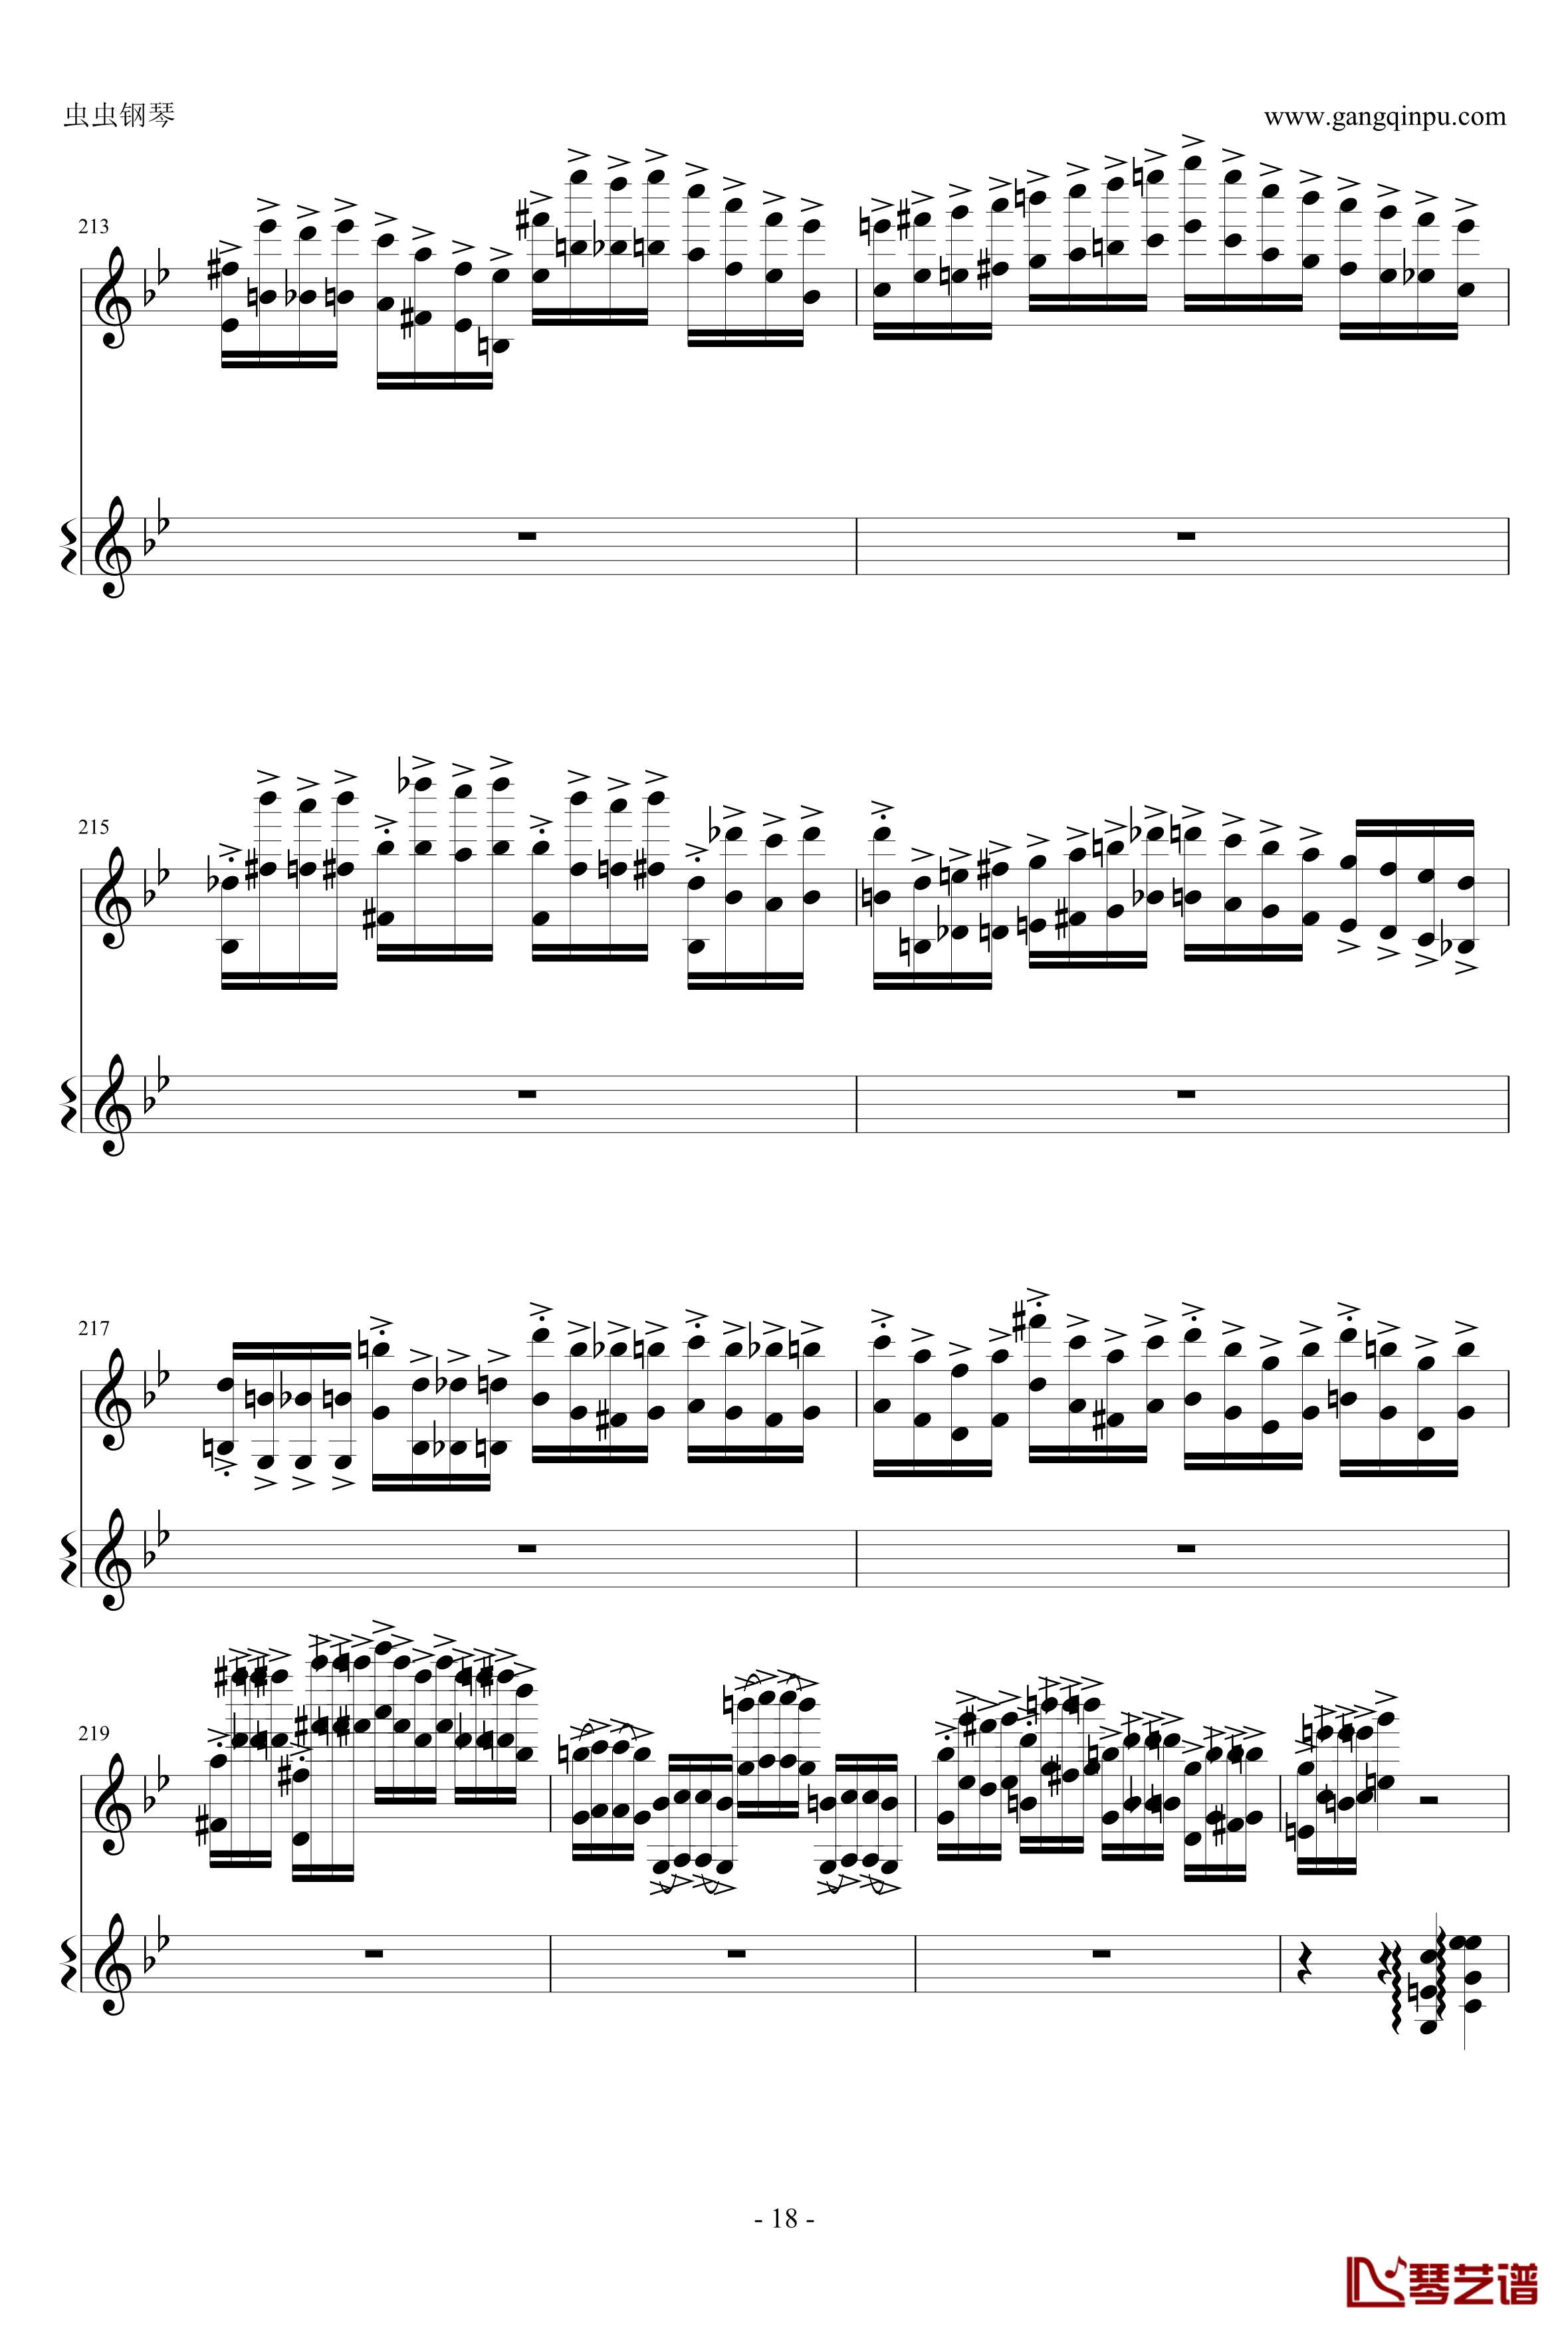 意大利国歌钢琴谱-变奏曲修改版-DXF18